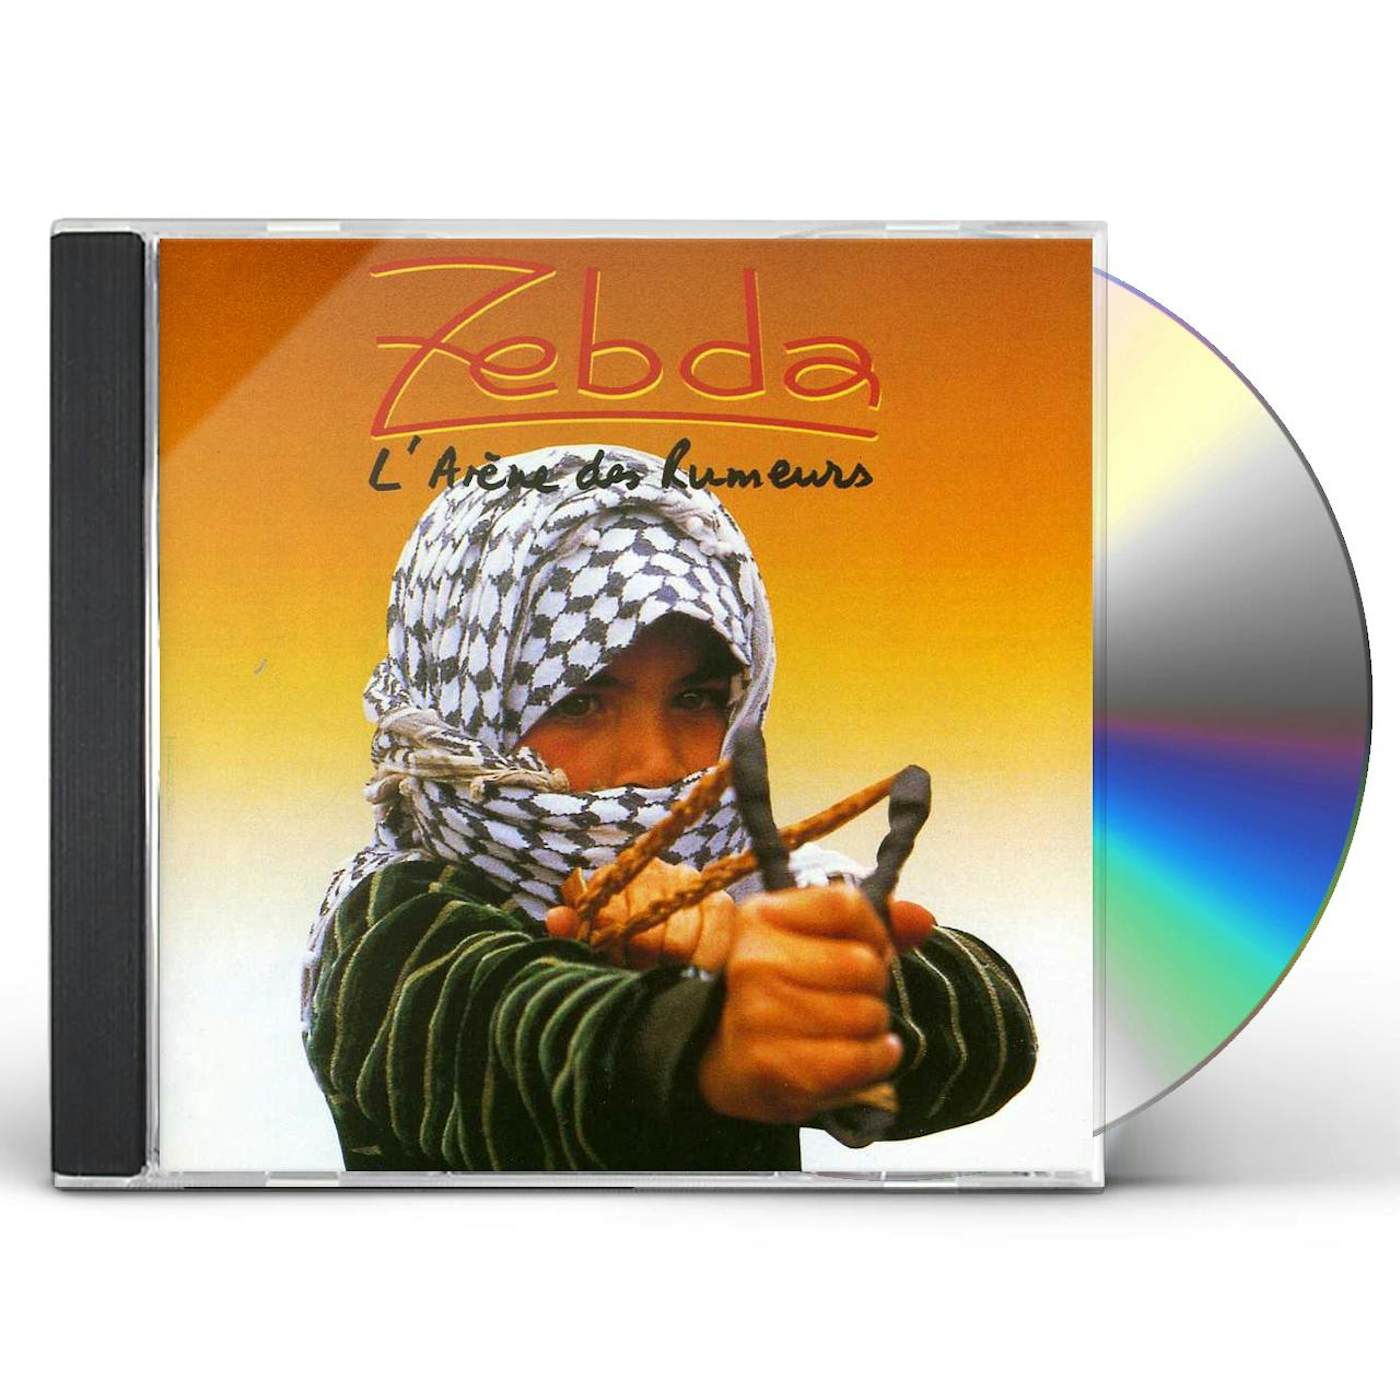 Zebda L'ARENE DES RUMEURS CD